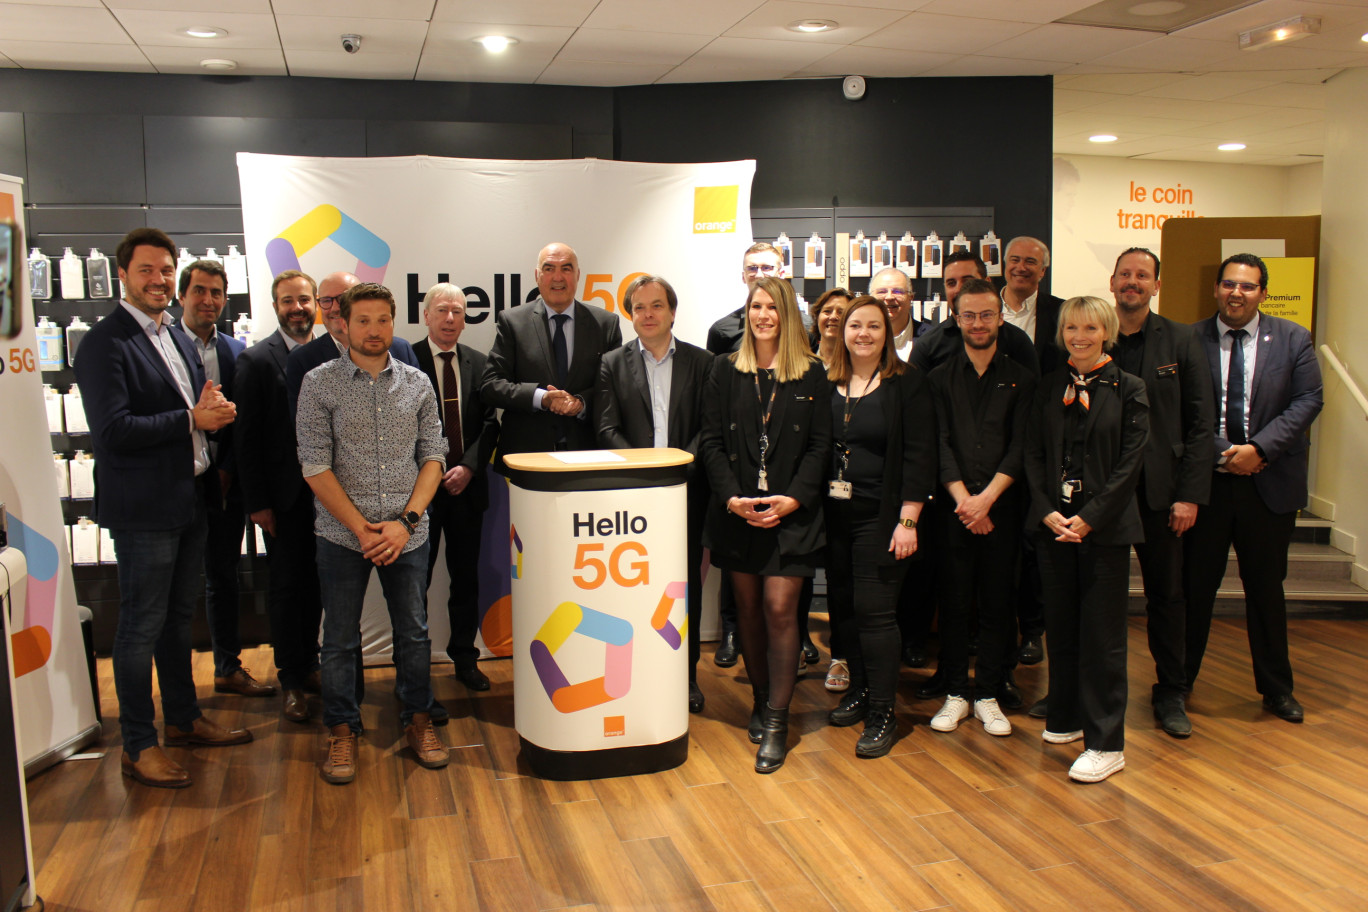 Les équipes d'Orange à Soissons ont activé le réseau 5G, en présence du sous-préfet Joël Dubreuil, du maire Alain Crémont et du président de la CCI 02, Olivier Jacob.